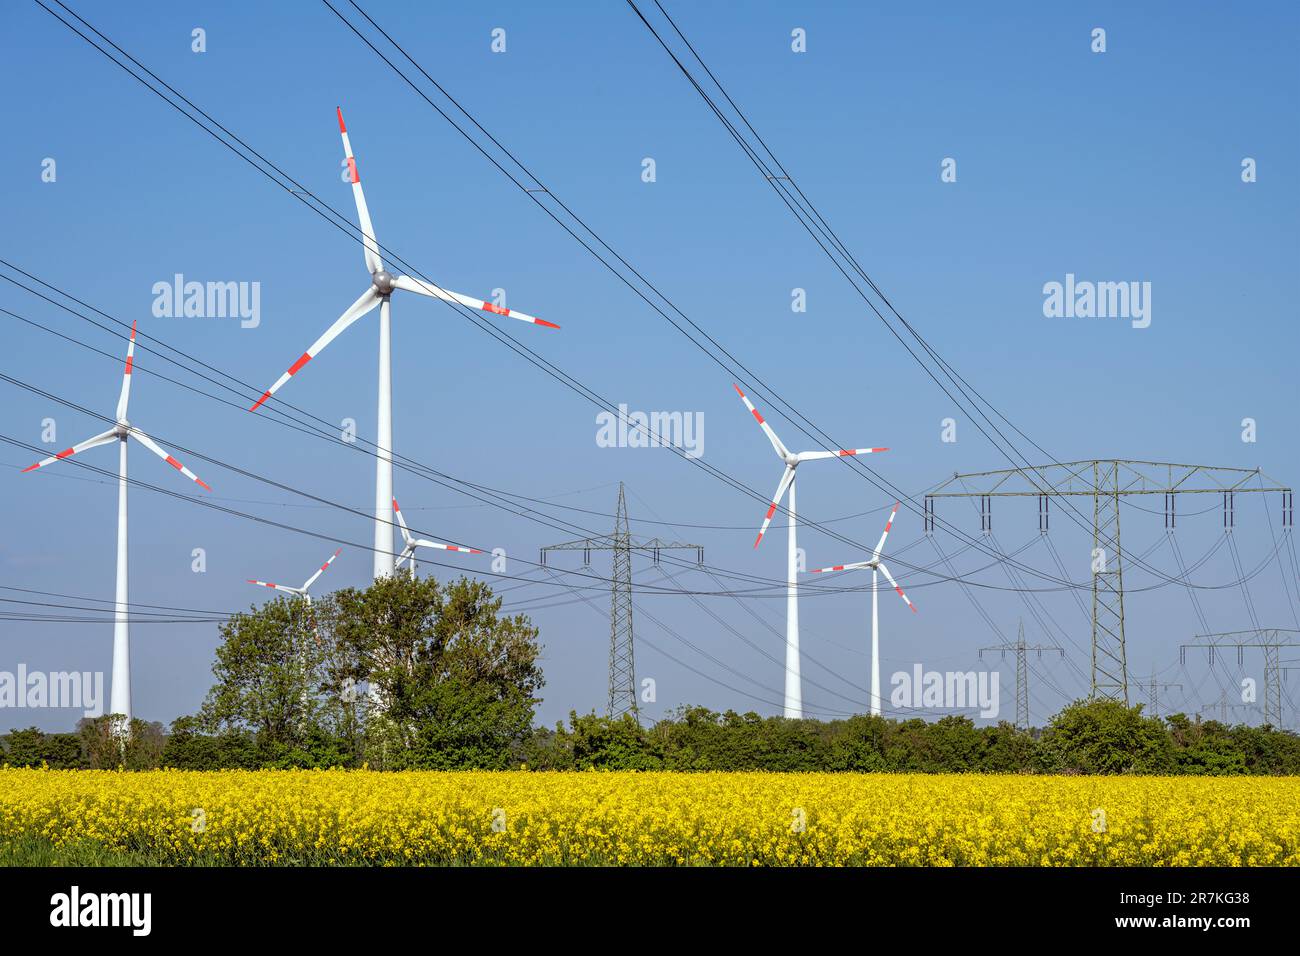 Linee elettriche e turbine eoliche in un campo di canola in fiore Foto Stock